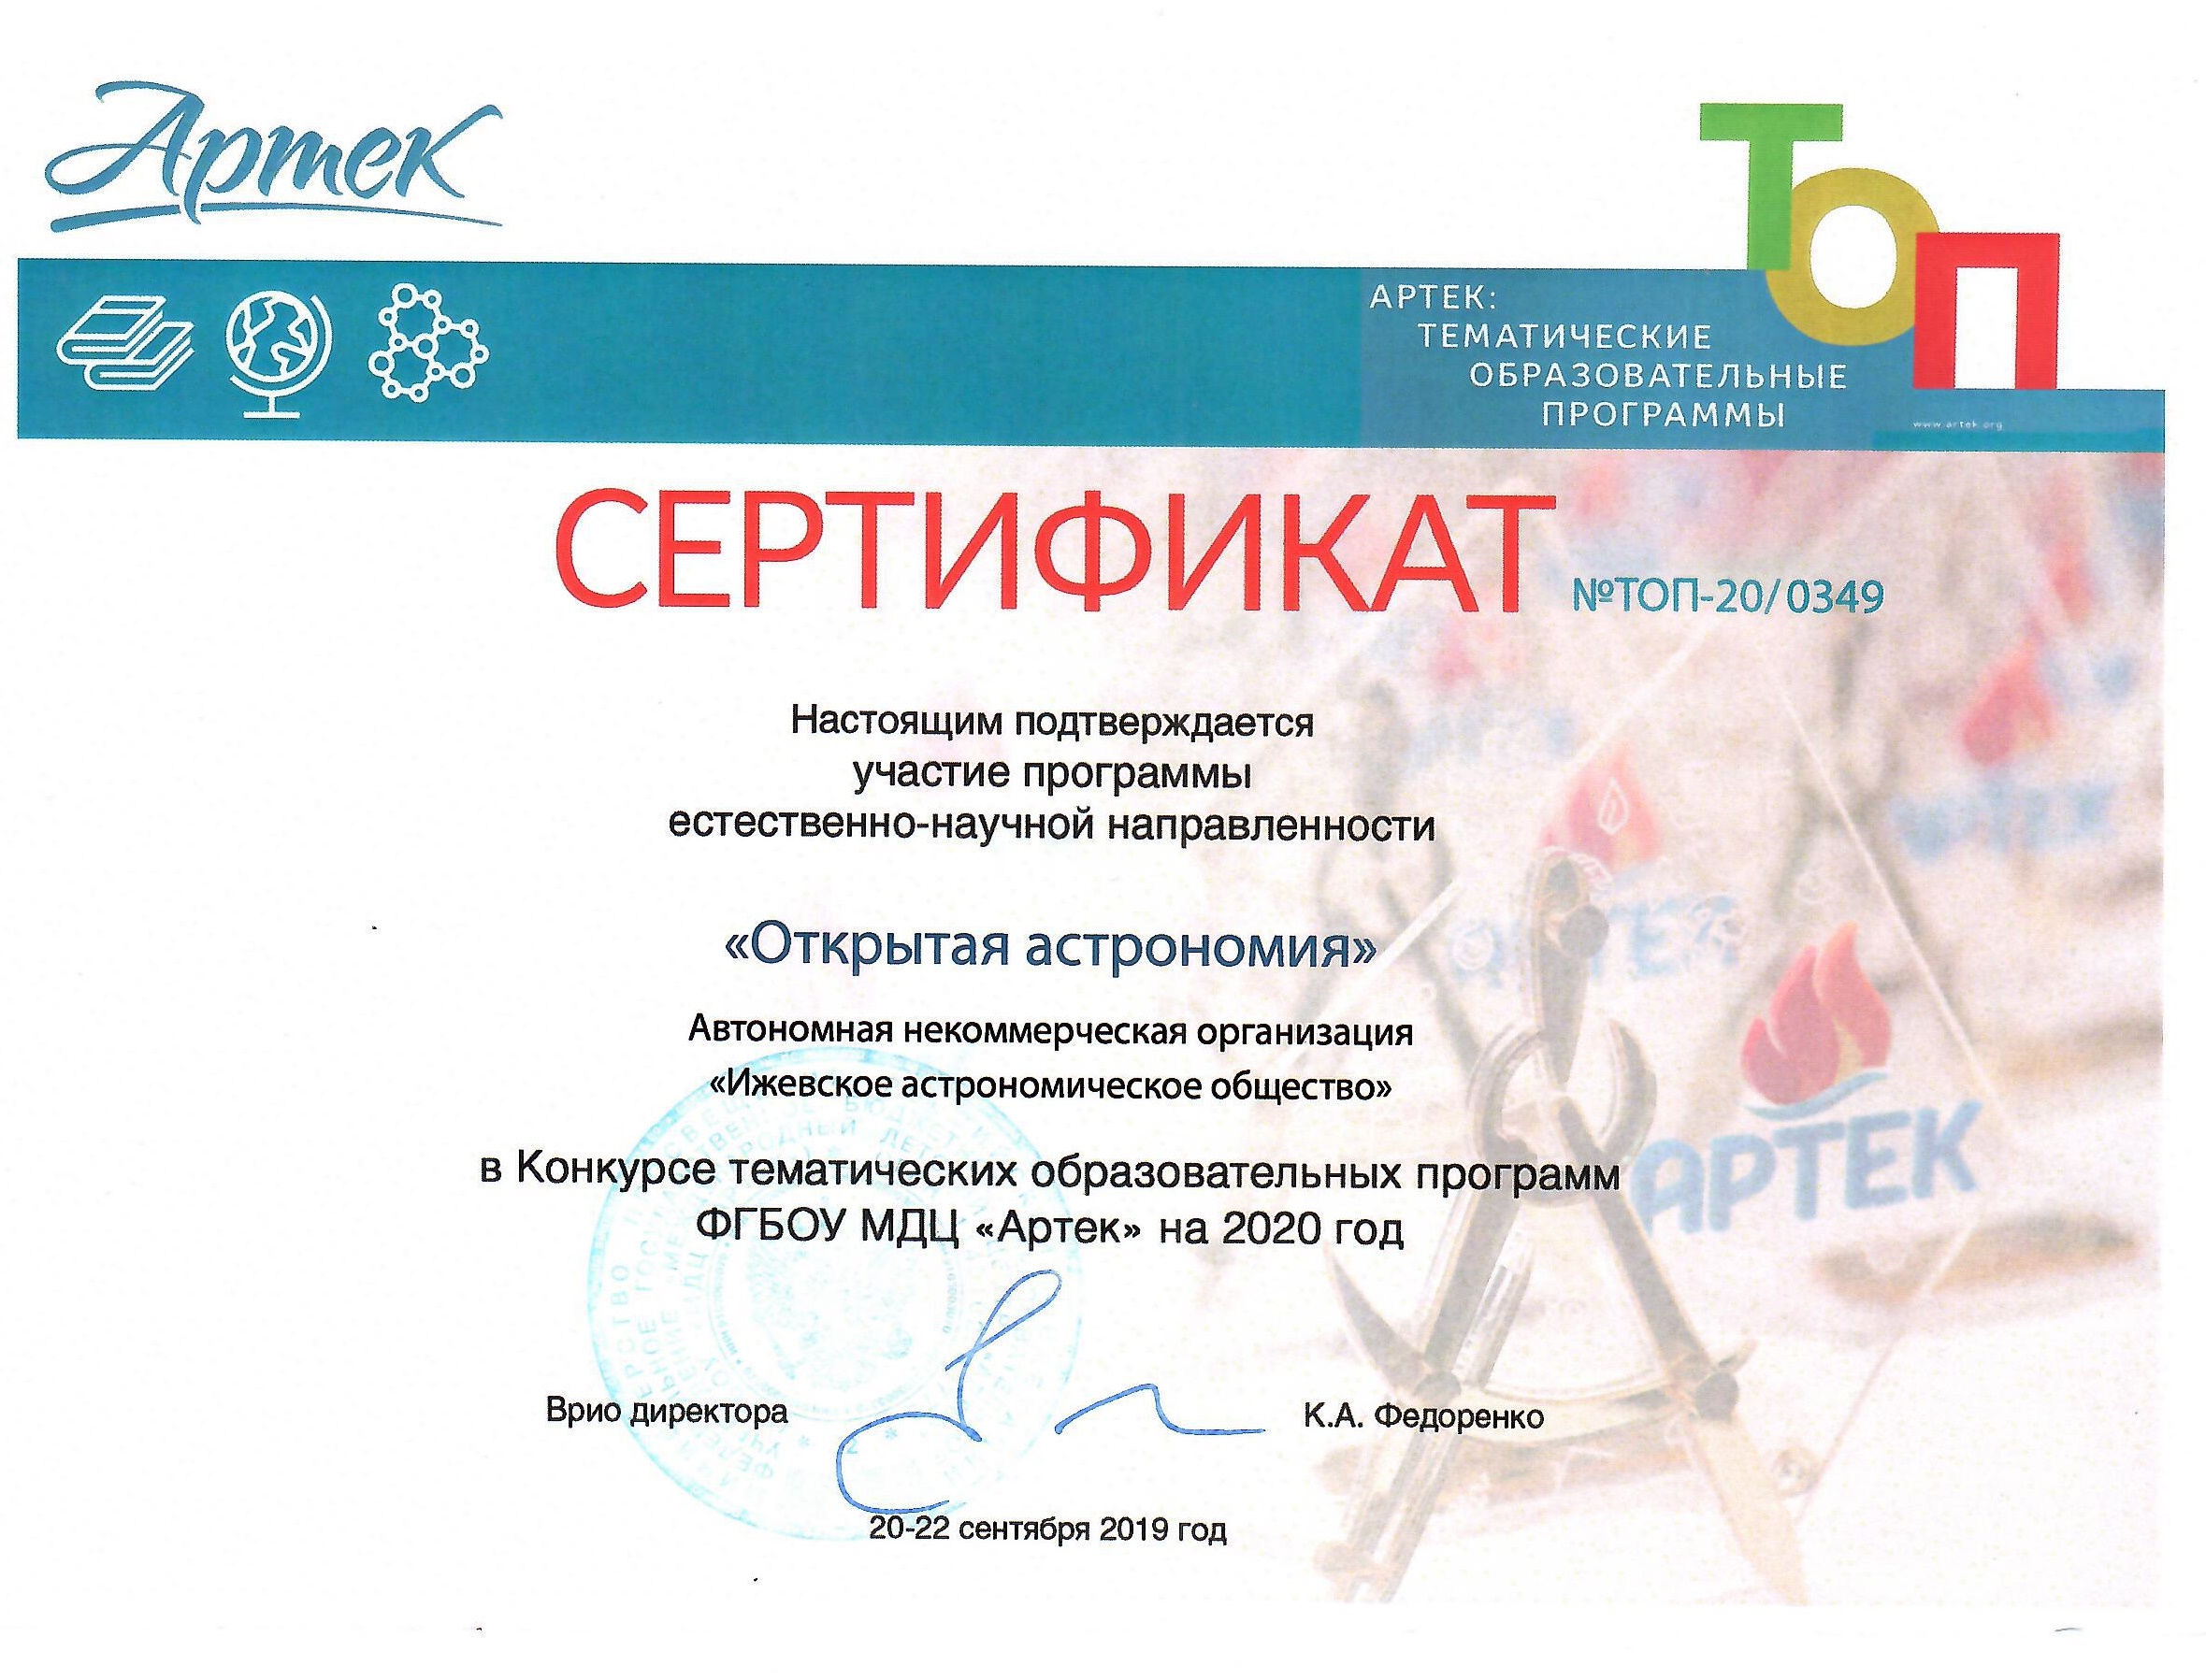 Конкурс тематических образовательных программ ФГБОУ МДЦ "Артек" на 2020 год.